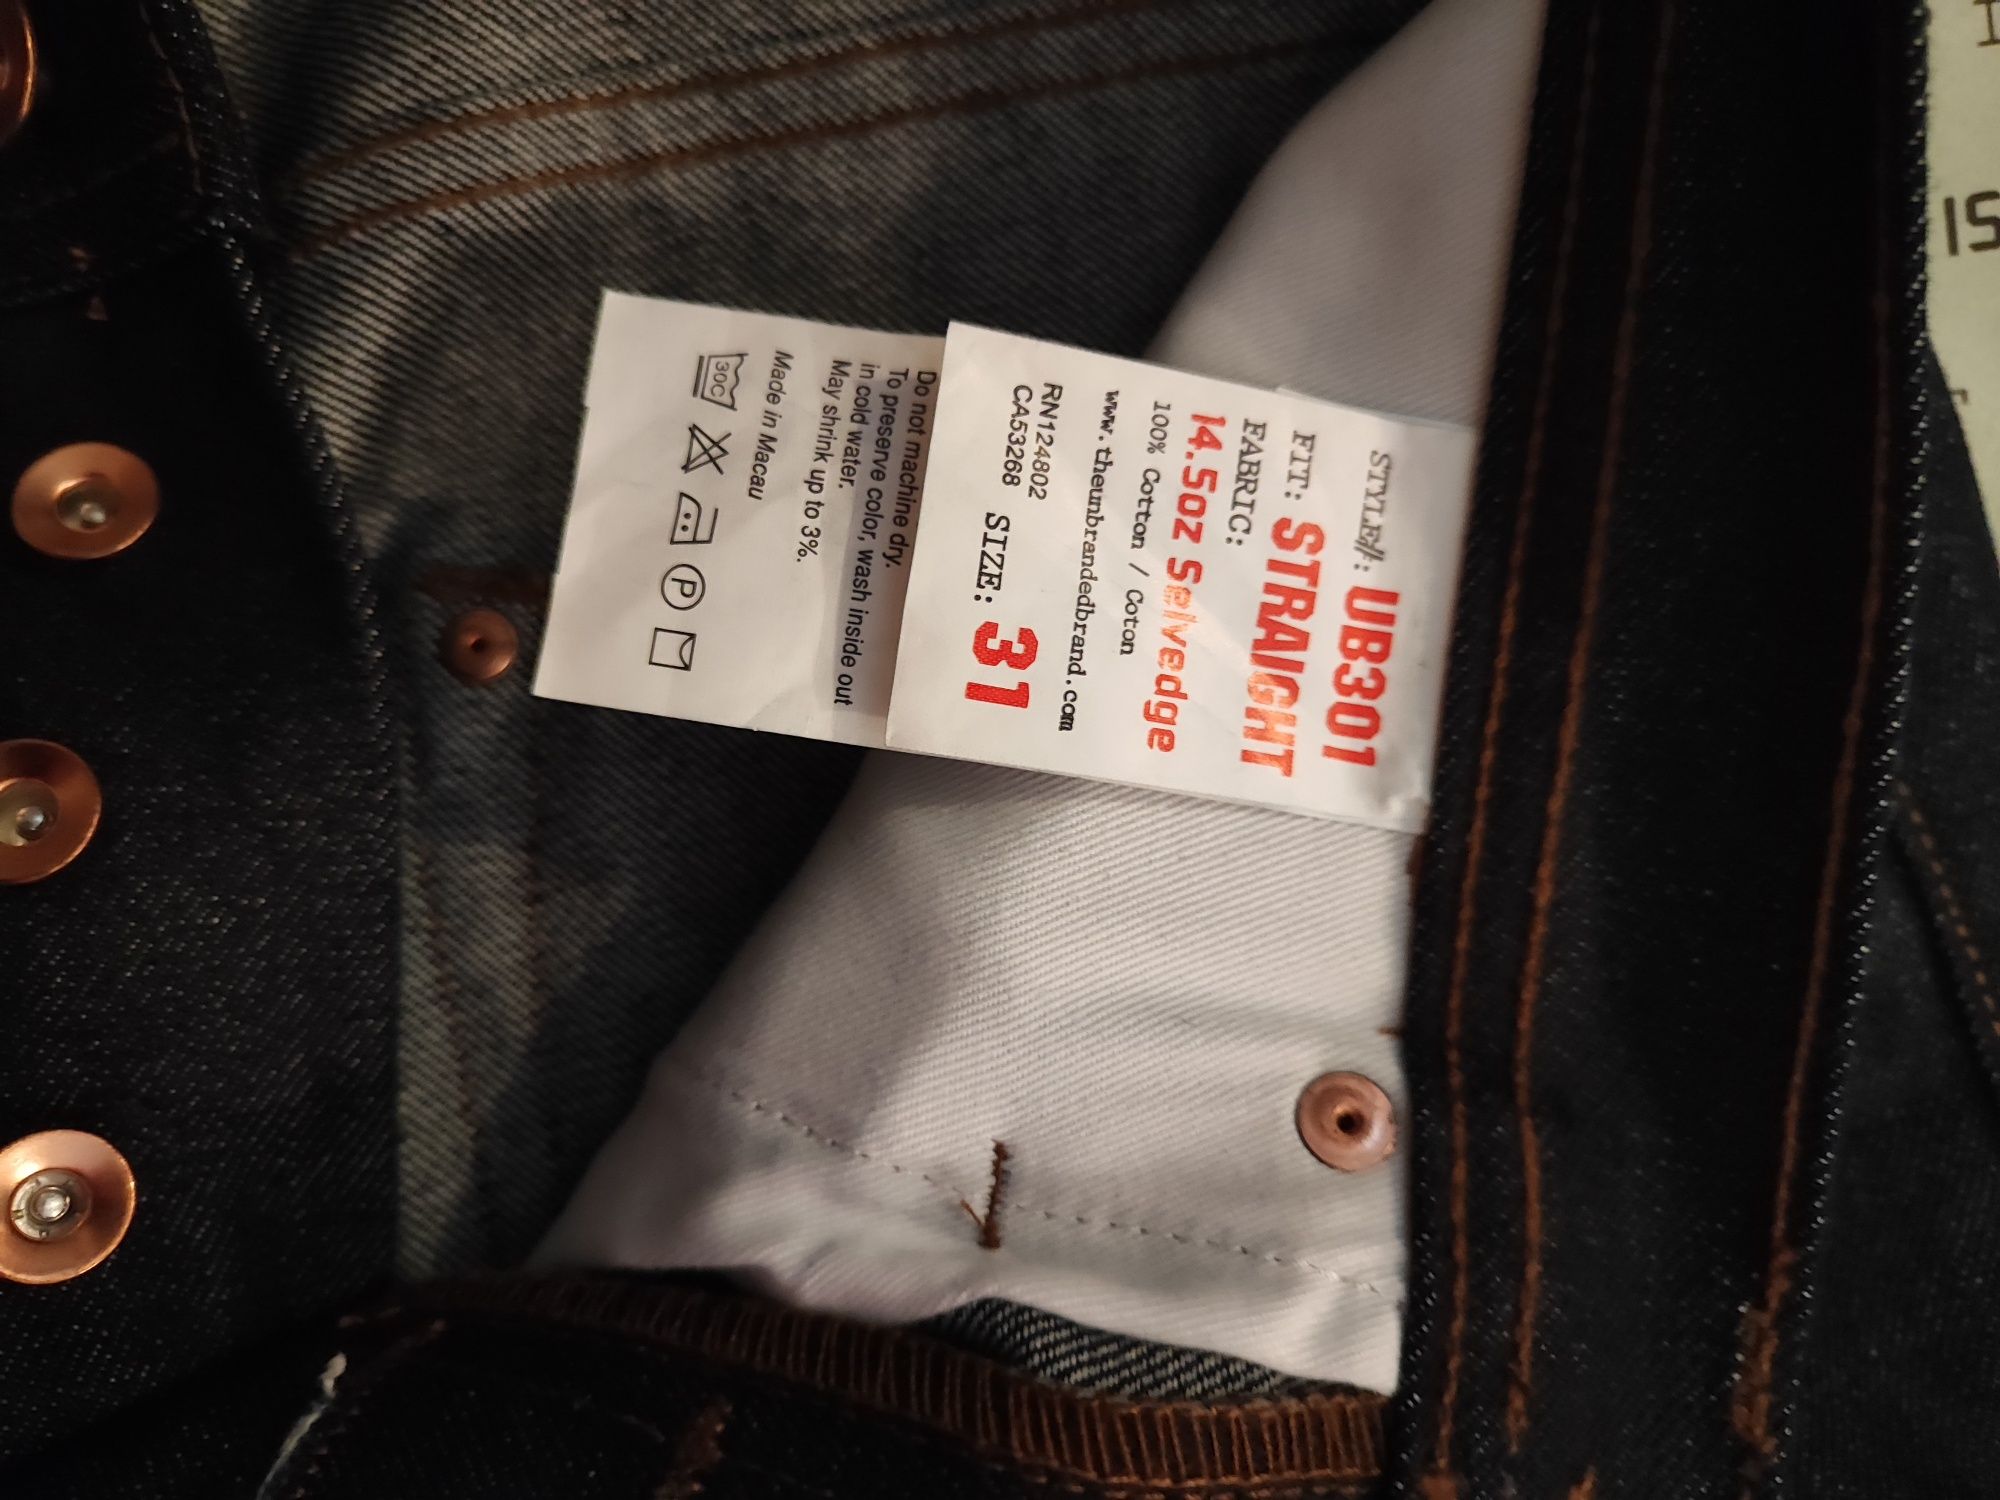 Американски оригинални selvedge мъжки нови дънки на Unbranded brand